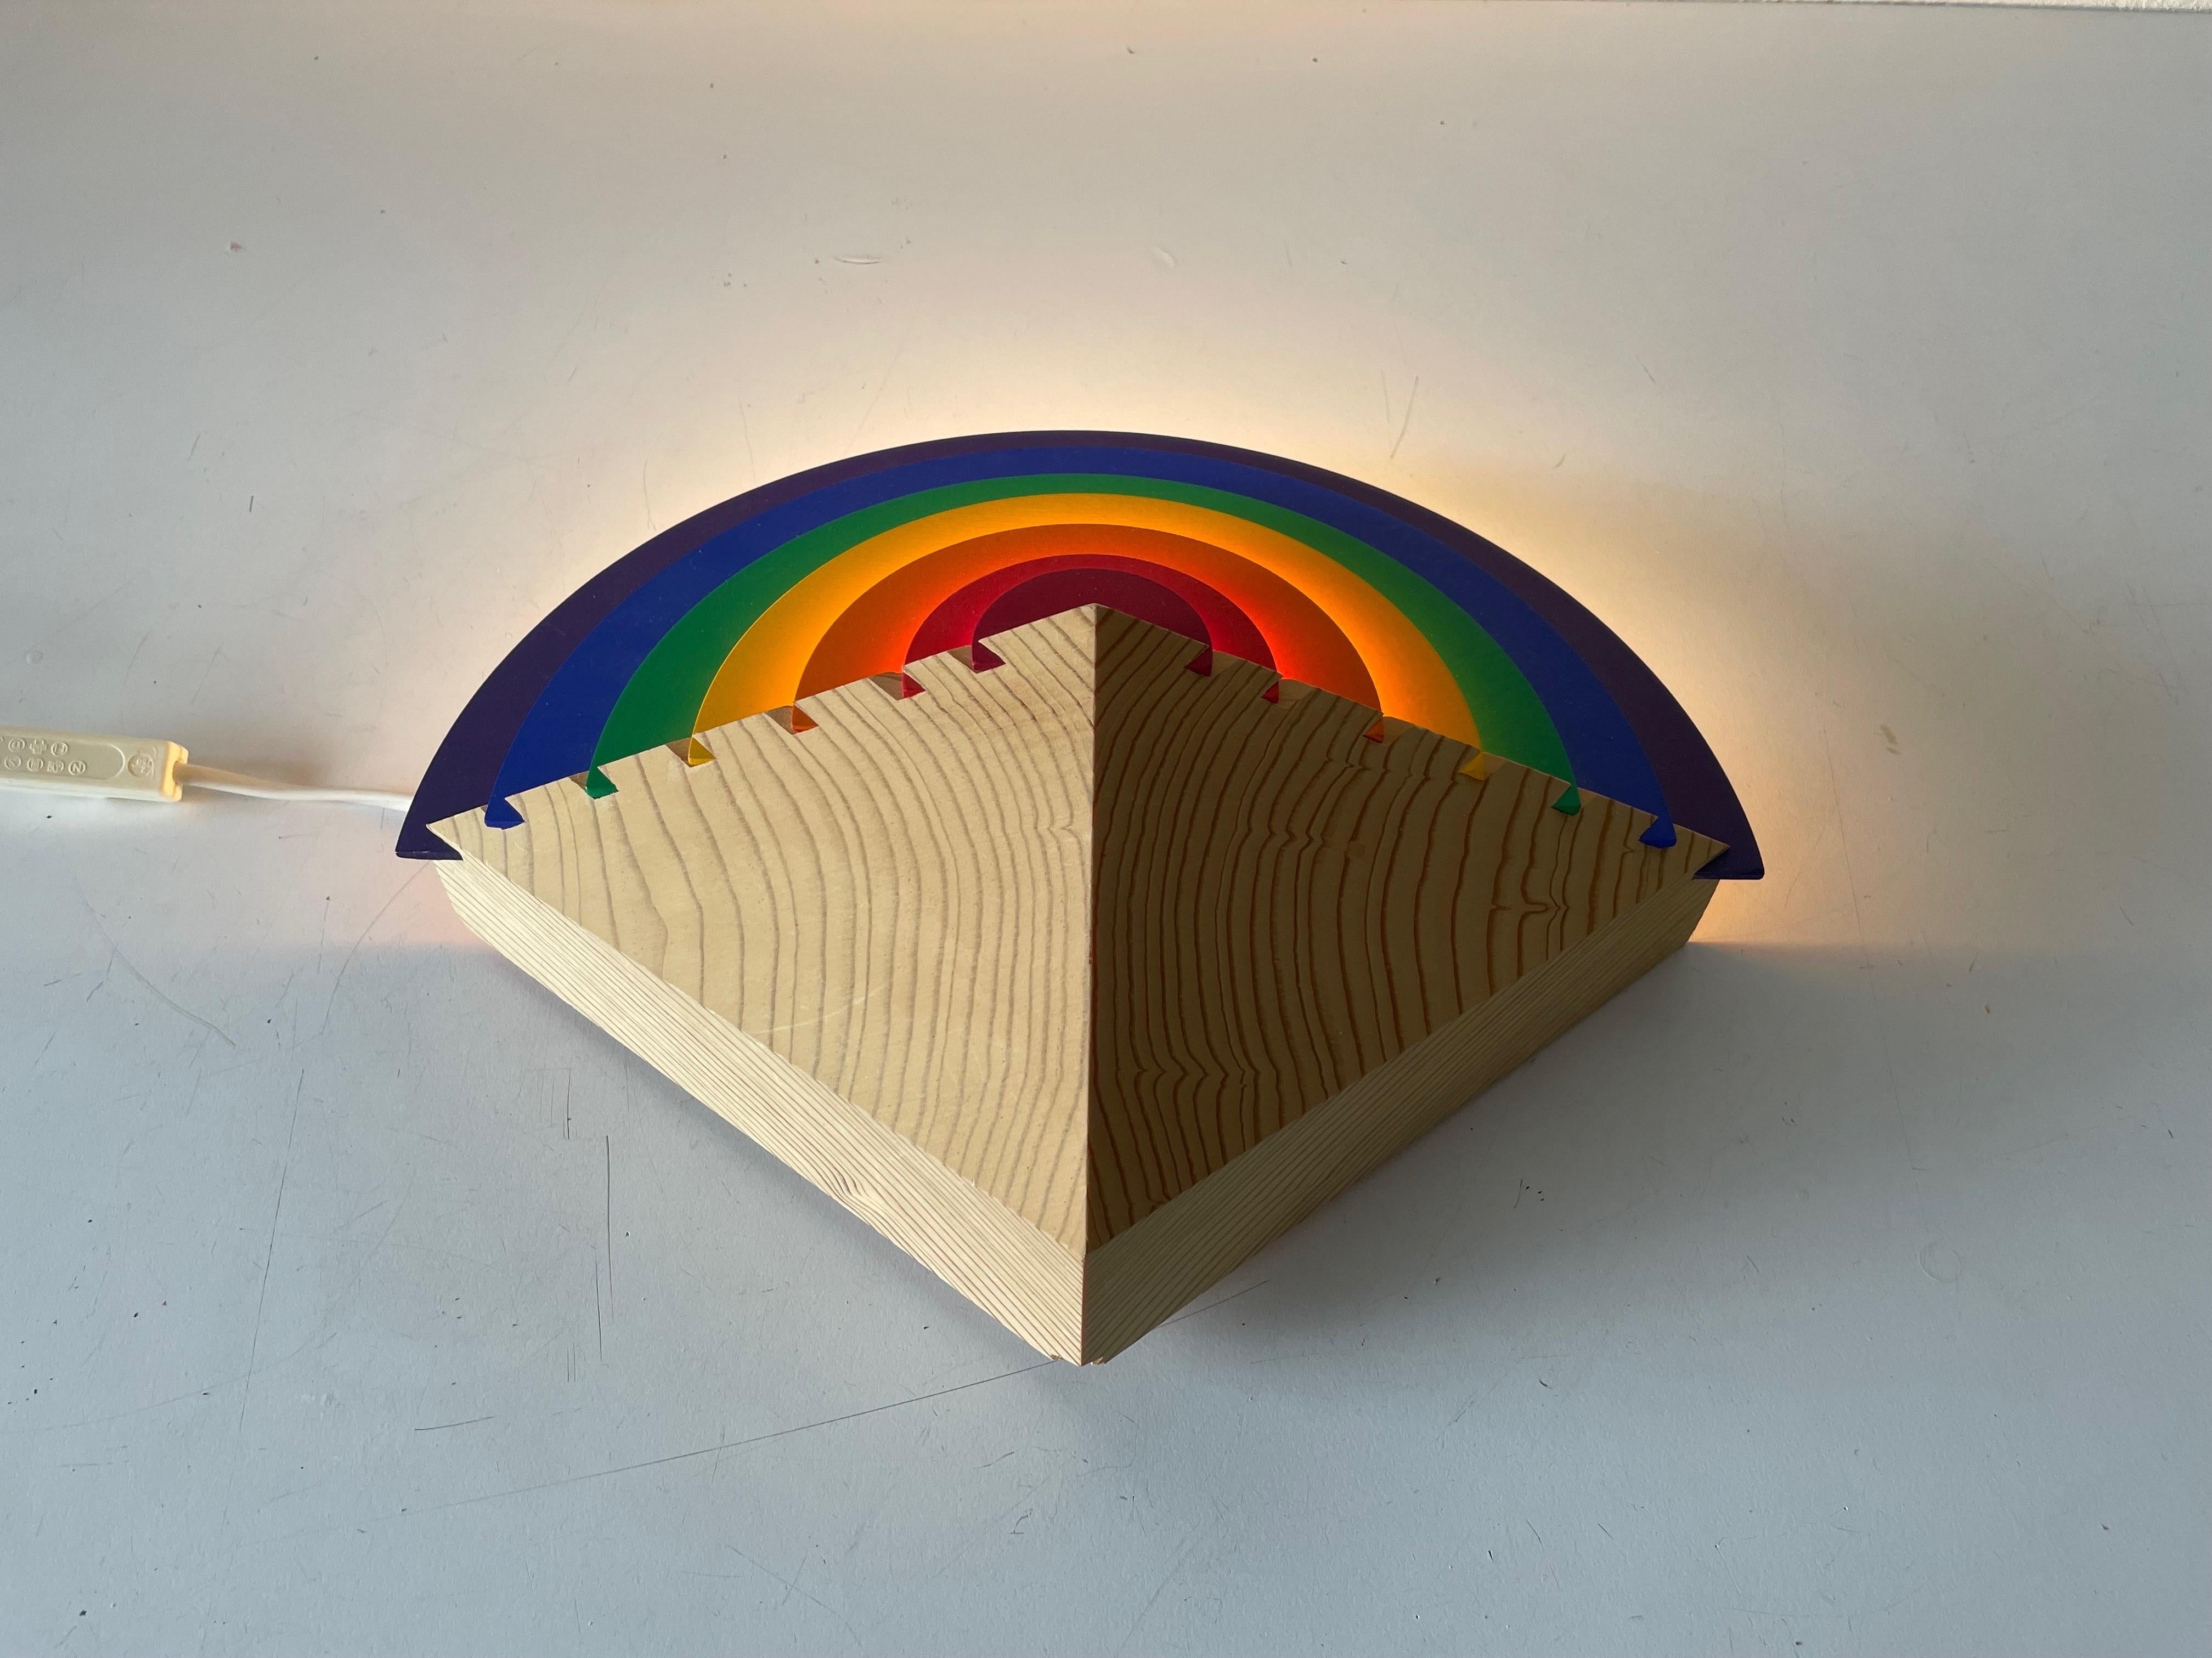 Regenbogen Design Holz Nachtlampe von Kiener Zürich, im Stil der Memphis Gruppe, 1980 (Ende des 20. Jahrhunderts) im Angebot